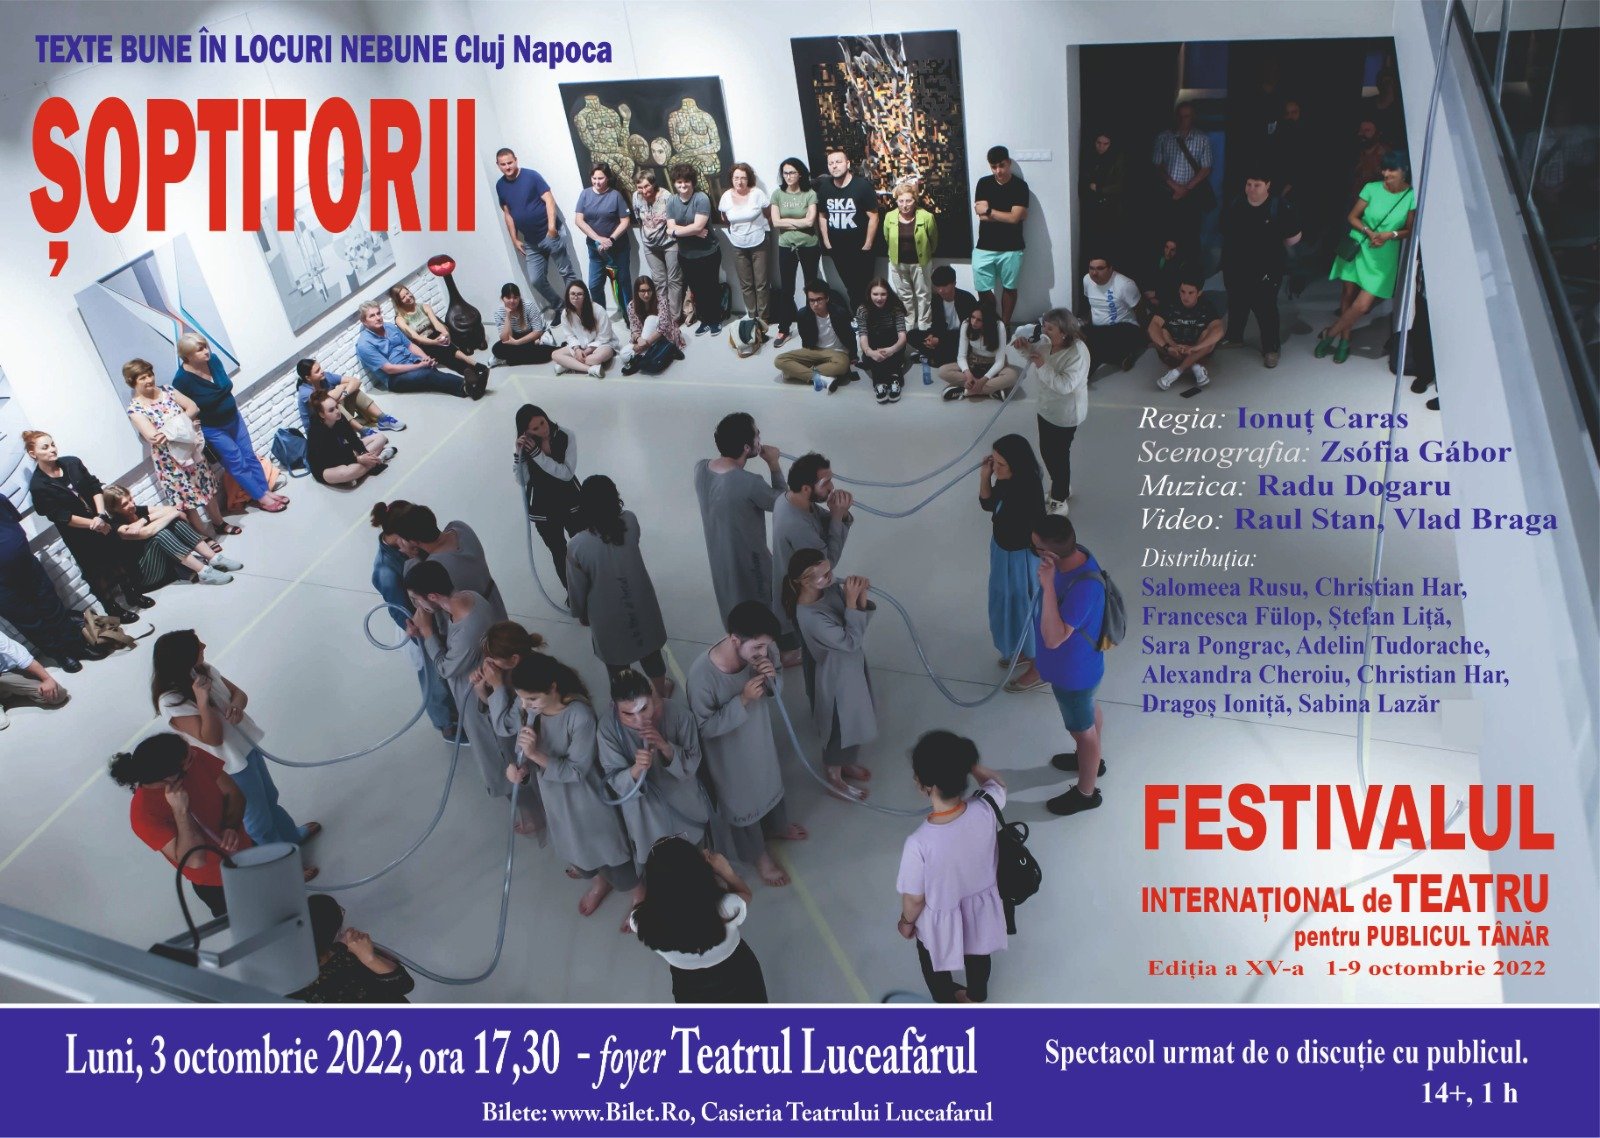  Festivalul Internaţional de Teatru începe săptămâna în forţă la Iaşi: trei piese la Teatrul Luceafărul